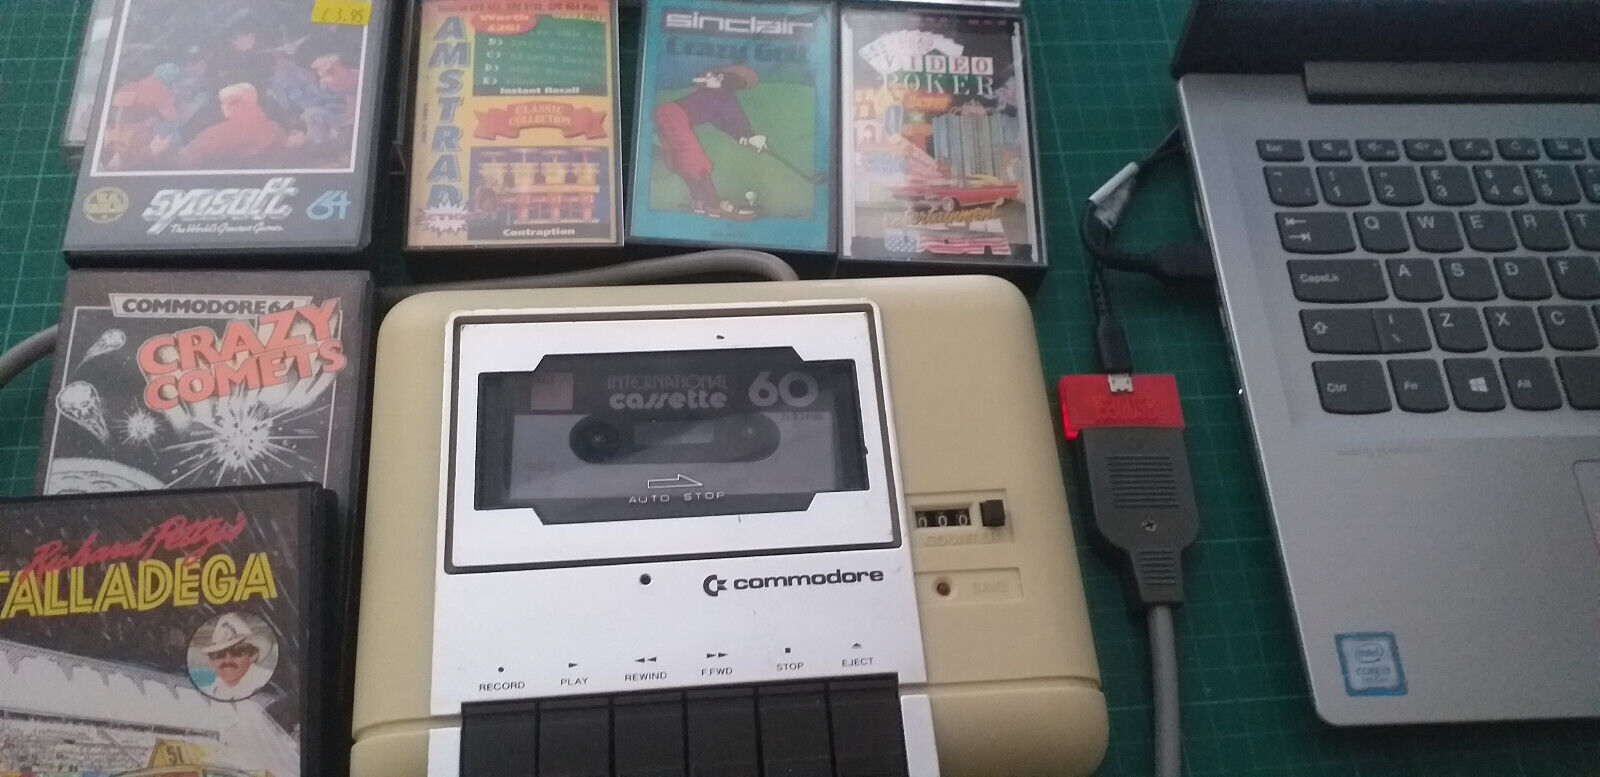 Commodore 1530USB Datasette - PC Adaptor C2N Tape Recorder Tapuino C64 VIC20 PET